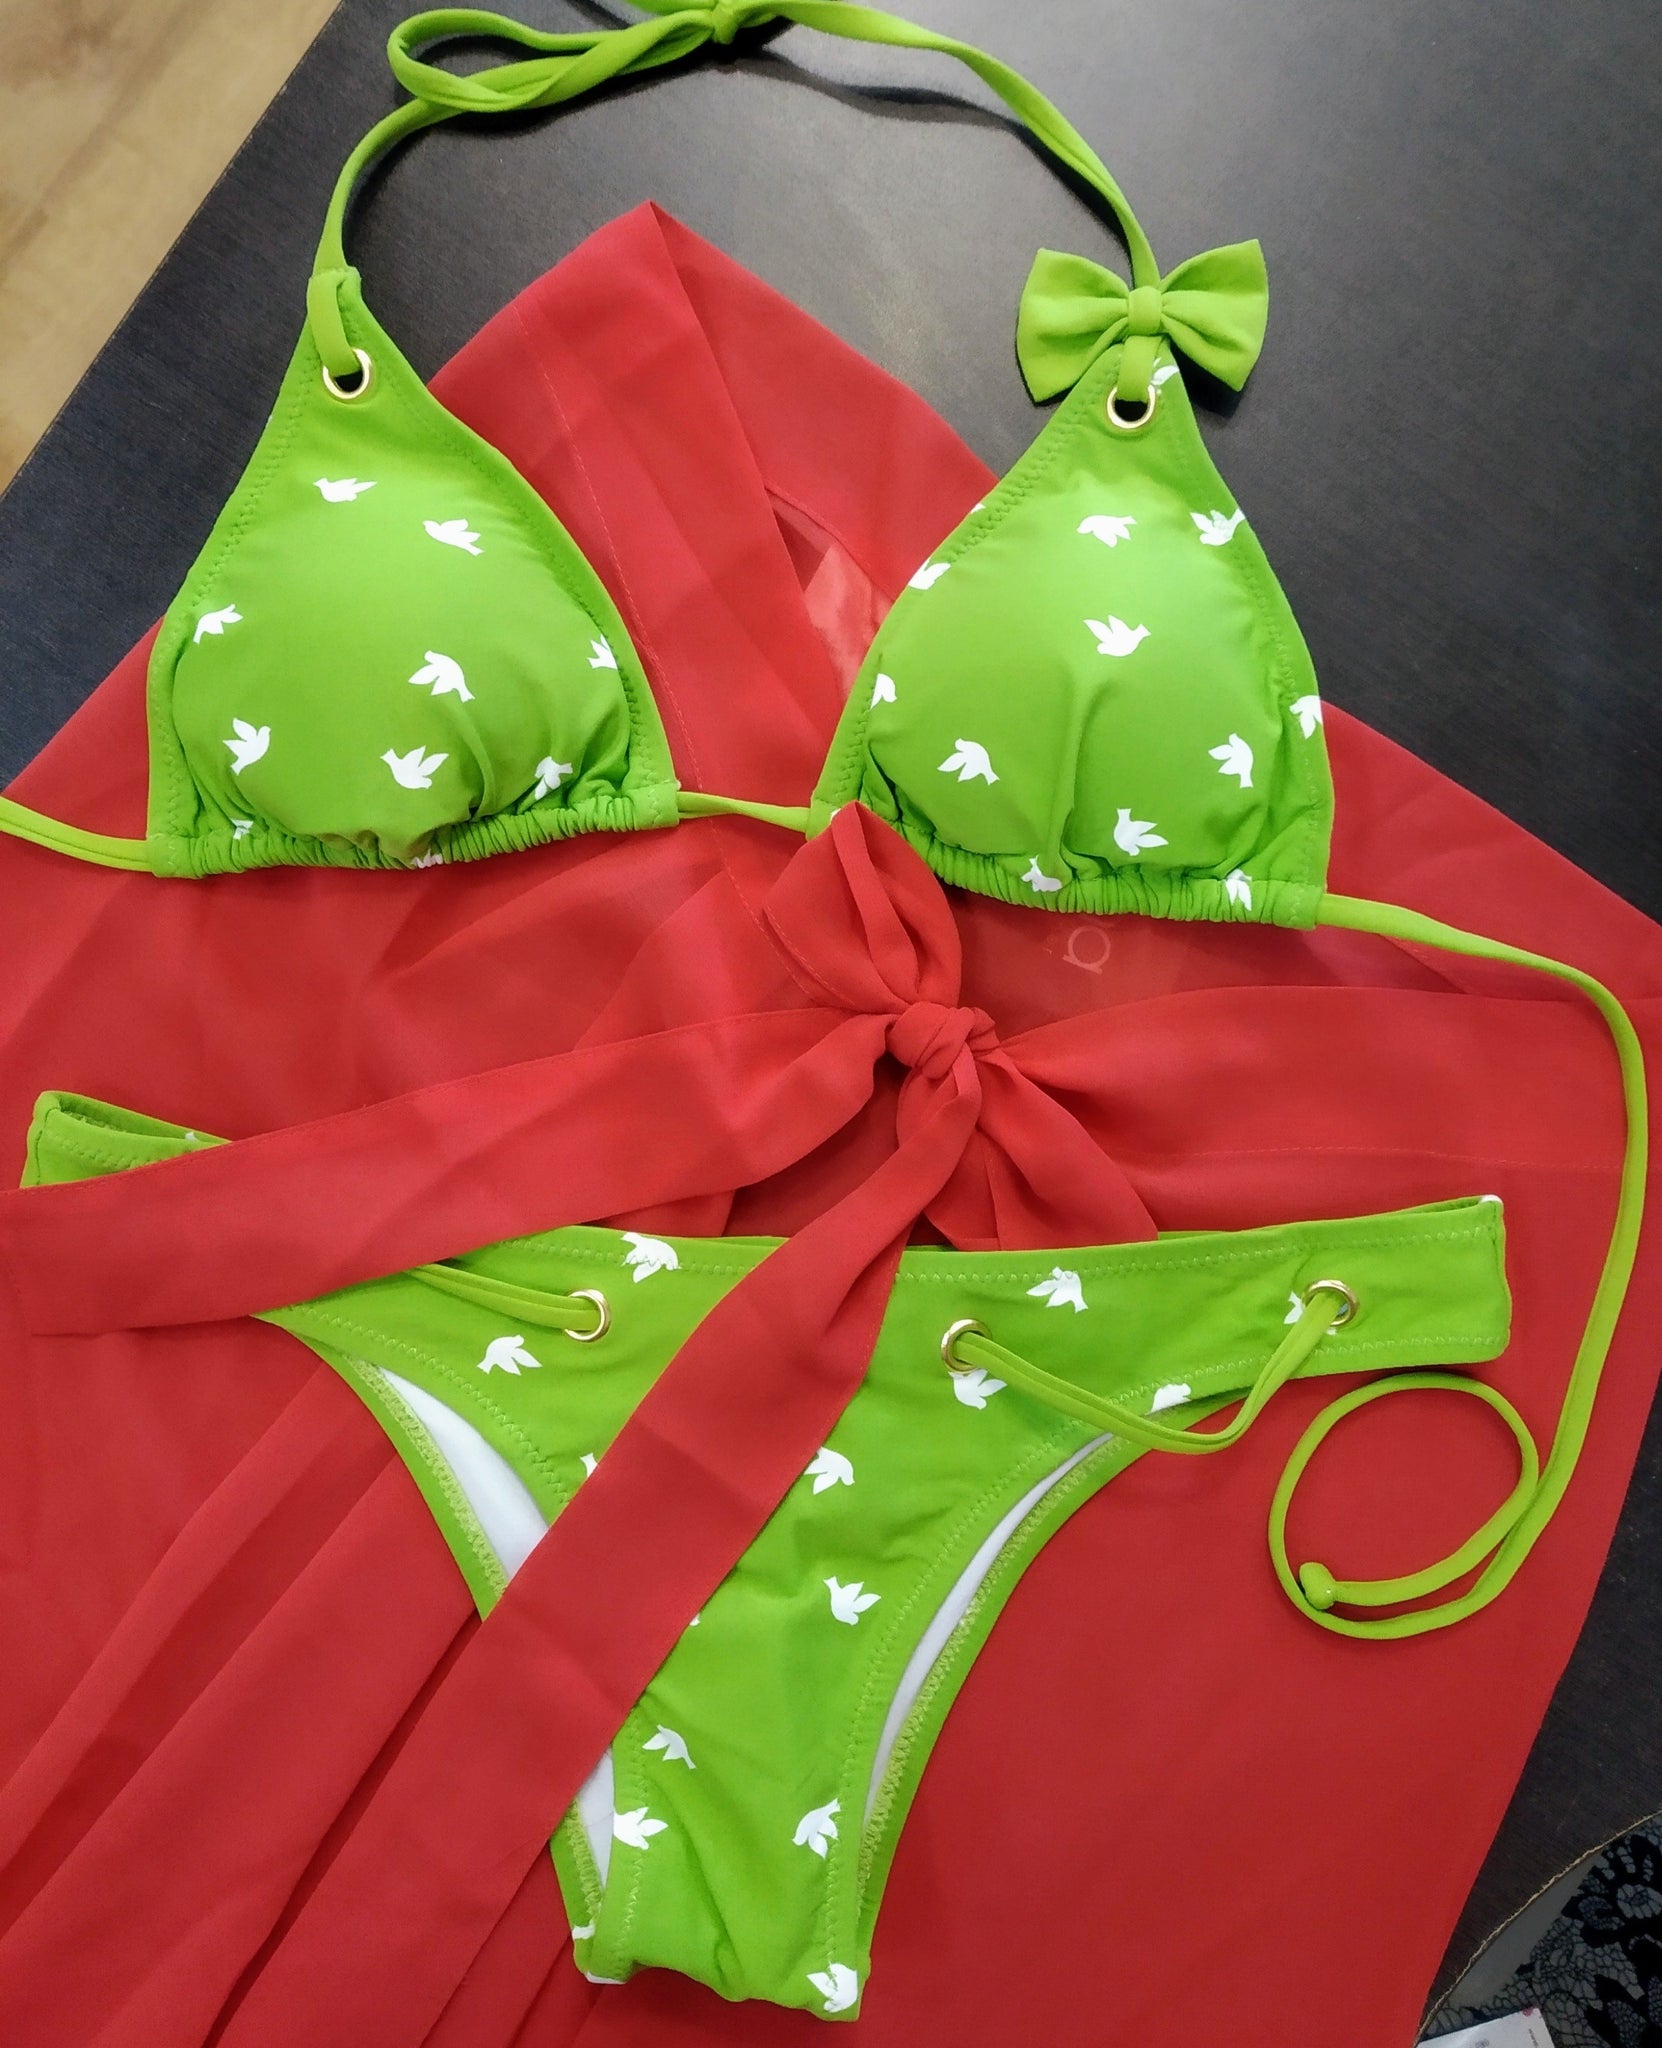 green triangle bikini set photographed on a red pareo. bikinn.com